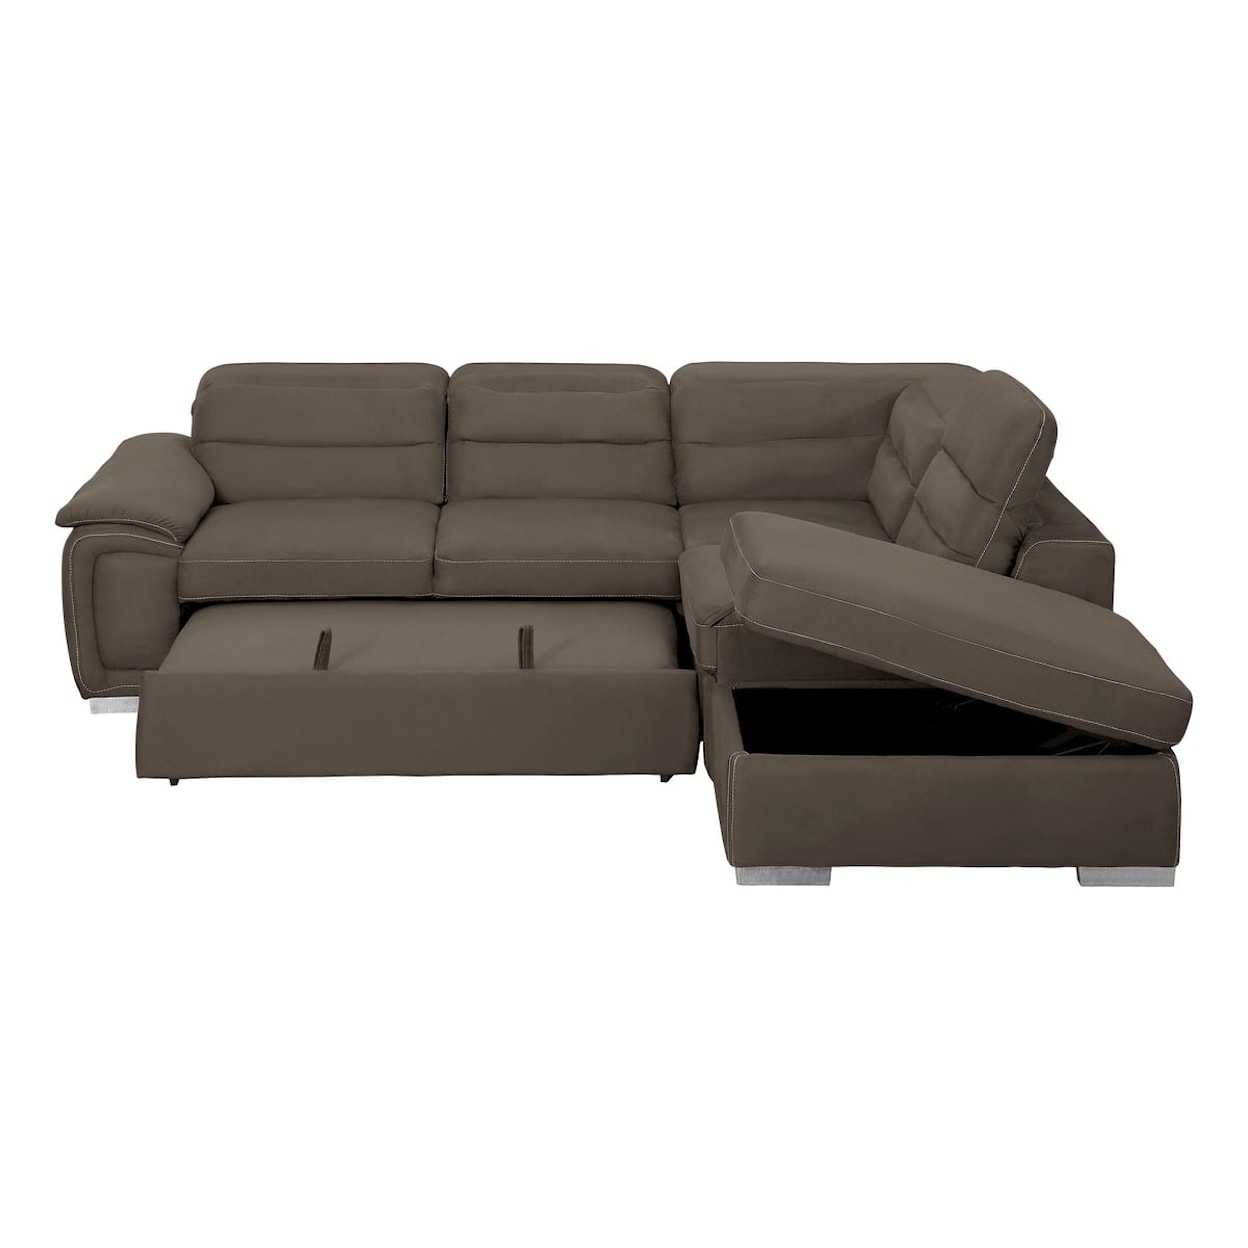 Homelegance Furniture Platina 3-Piece Sectional Sofa